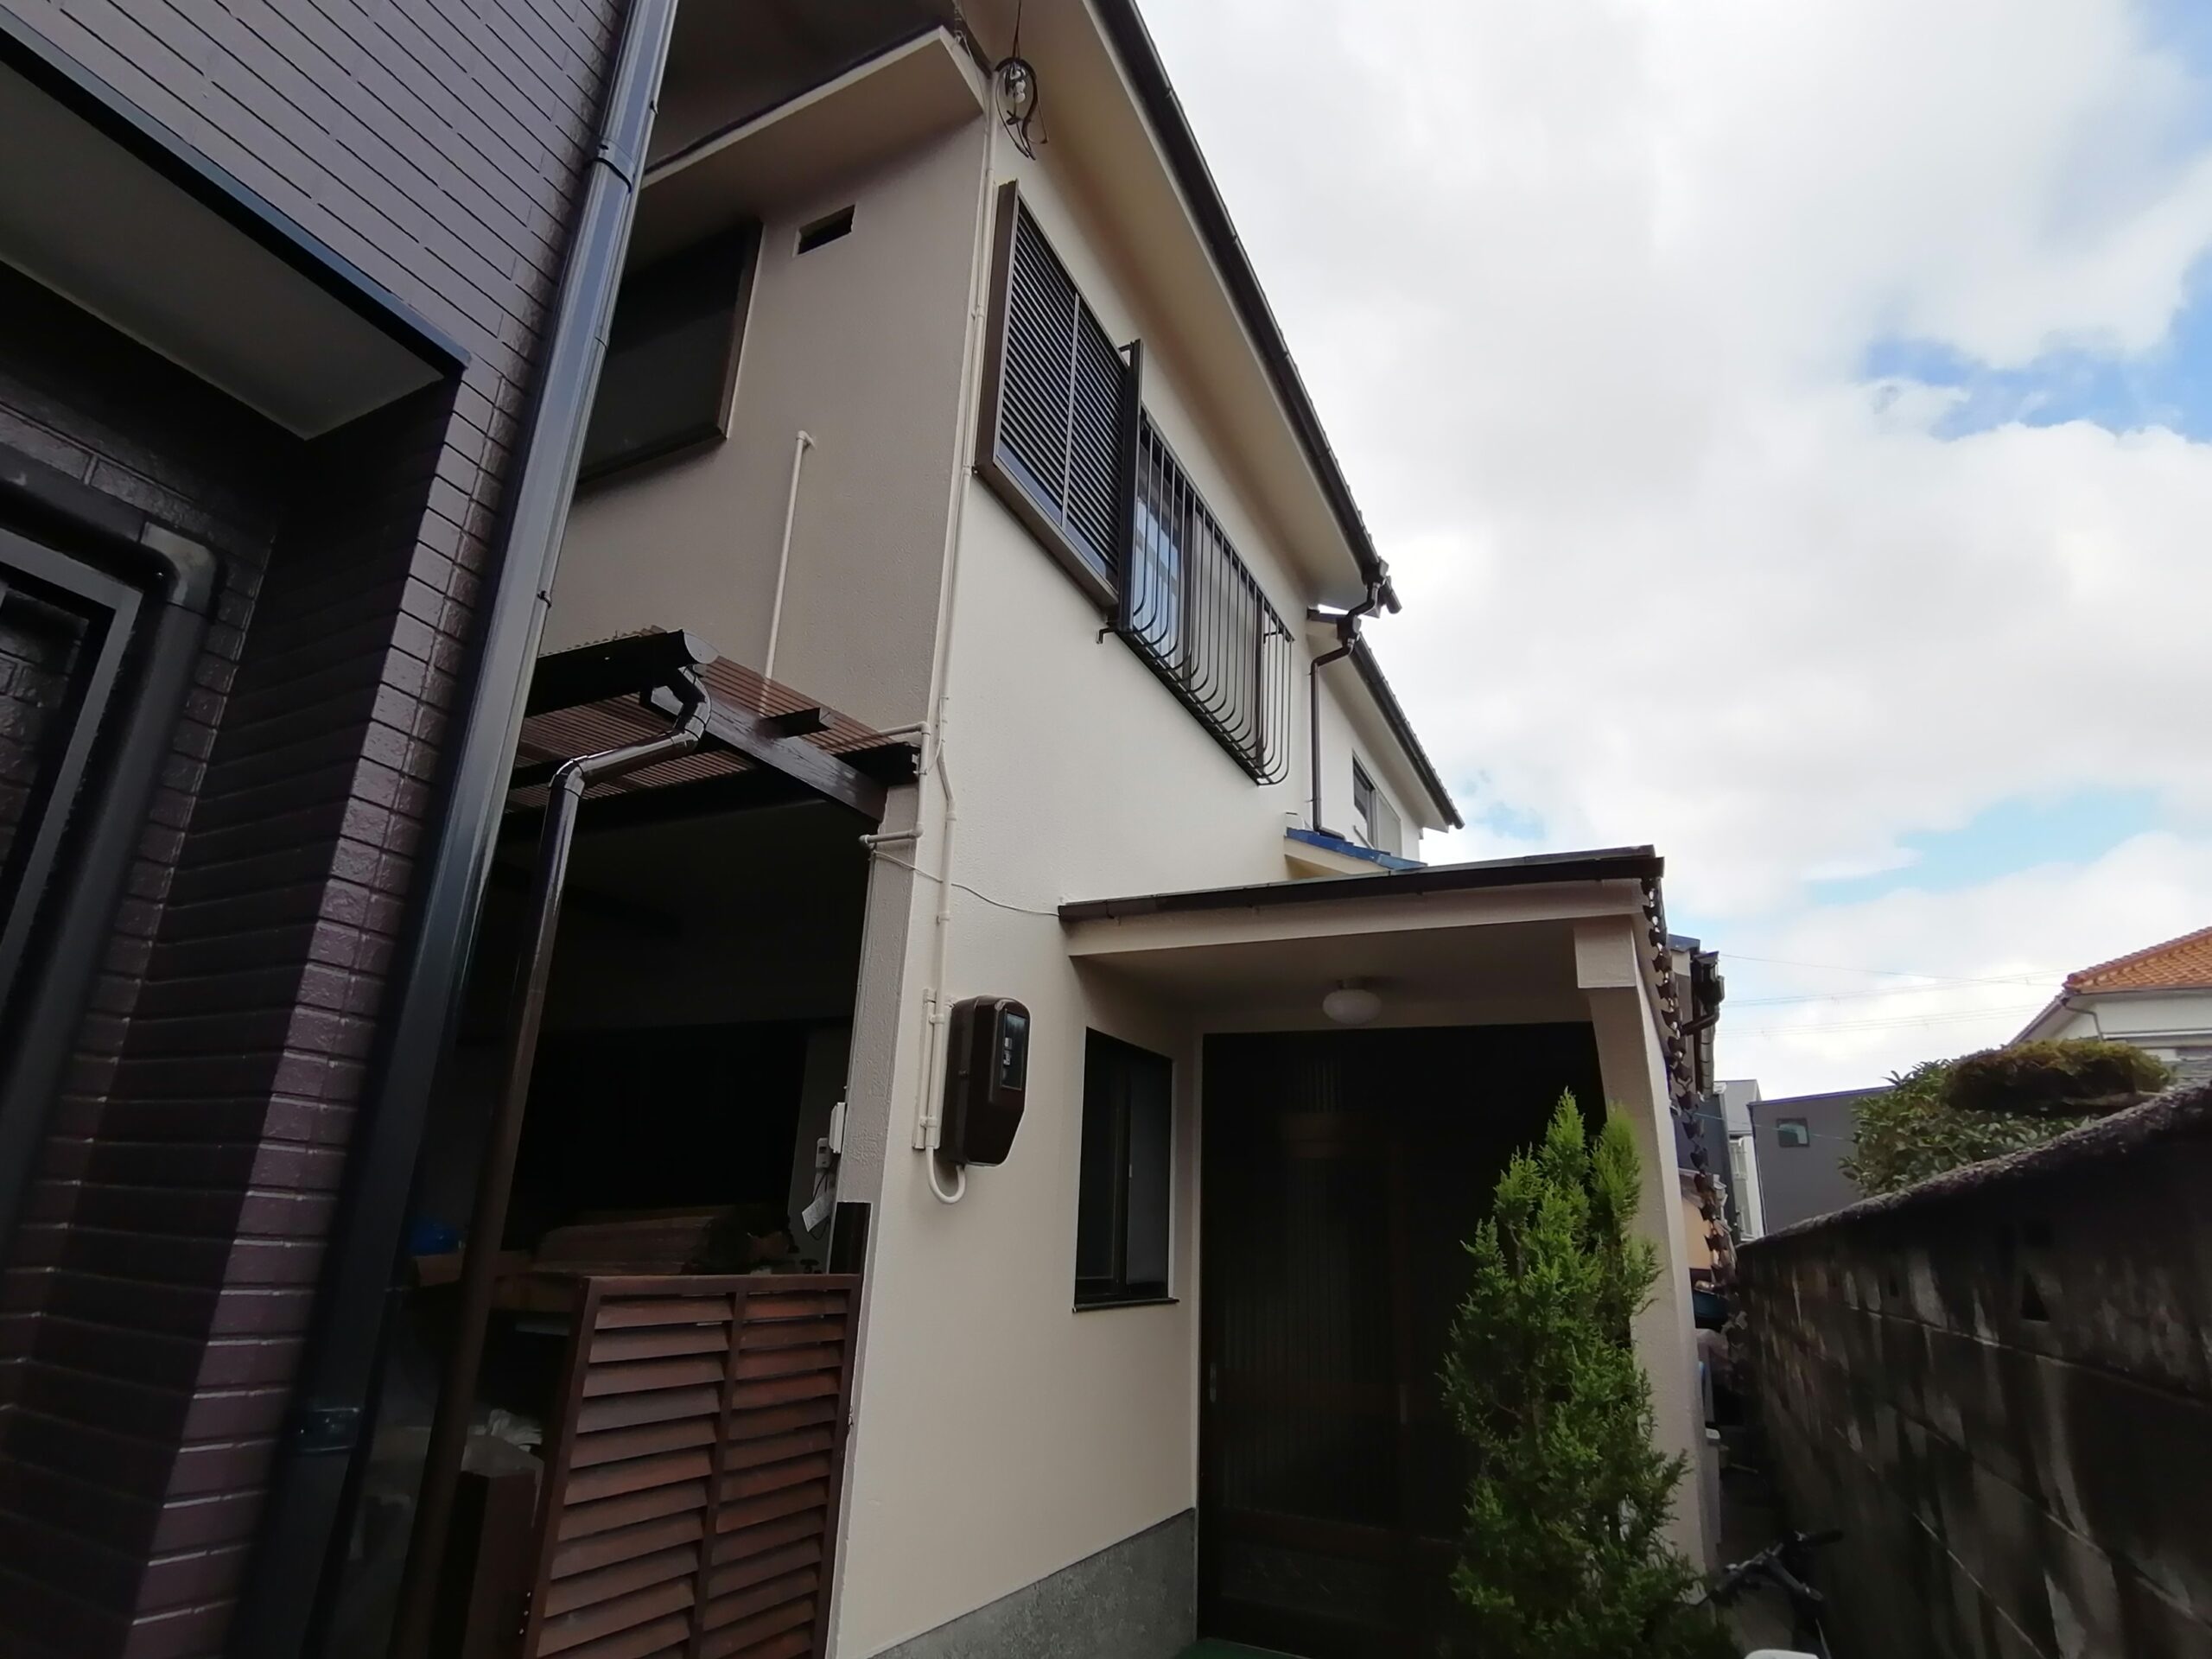 堺での屋根瓦漆喰、外壁塗装です♬【堺市】